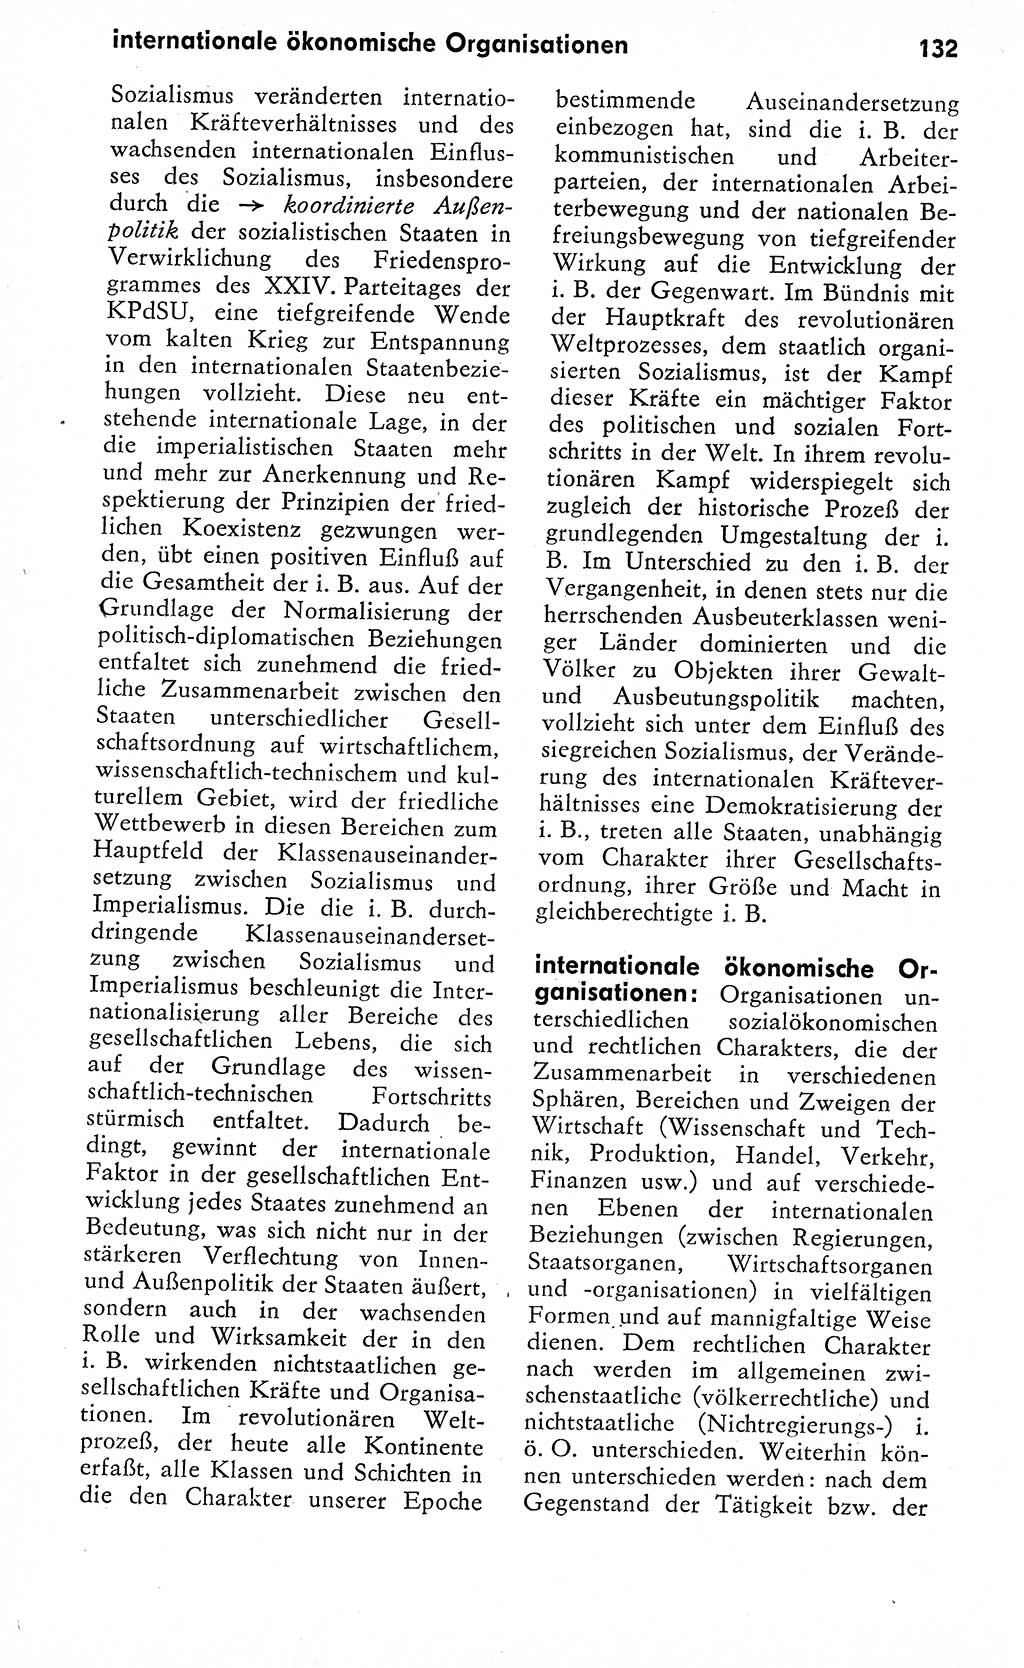 Wörterbuch zum sozialistischen Staat [Deutsche Demokratische Republik (DDR)] 1974, Seite 132 (Wb. soz. St. DDR 1974, S. 132)